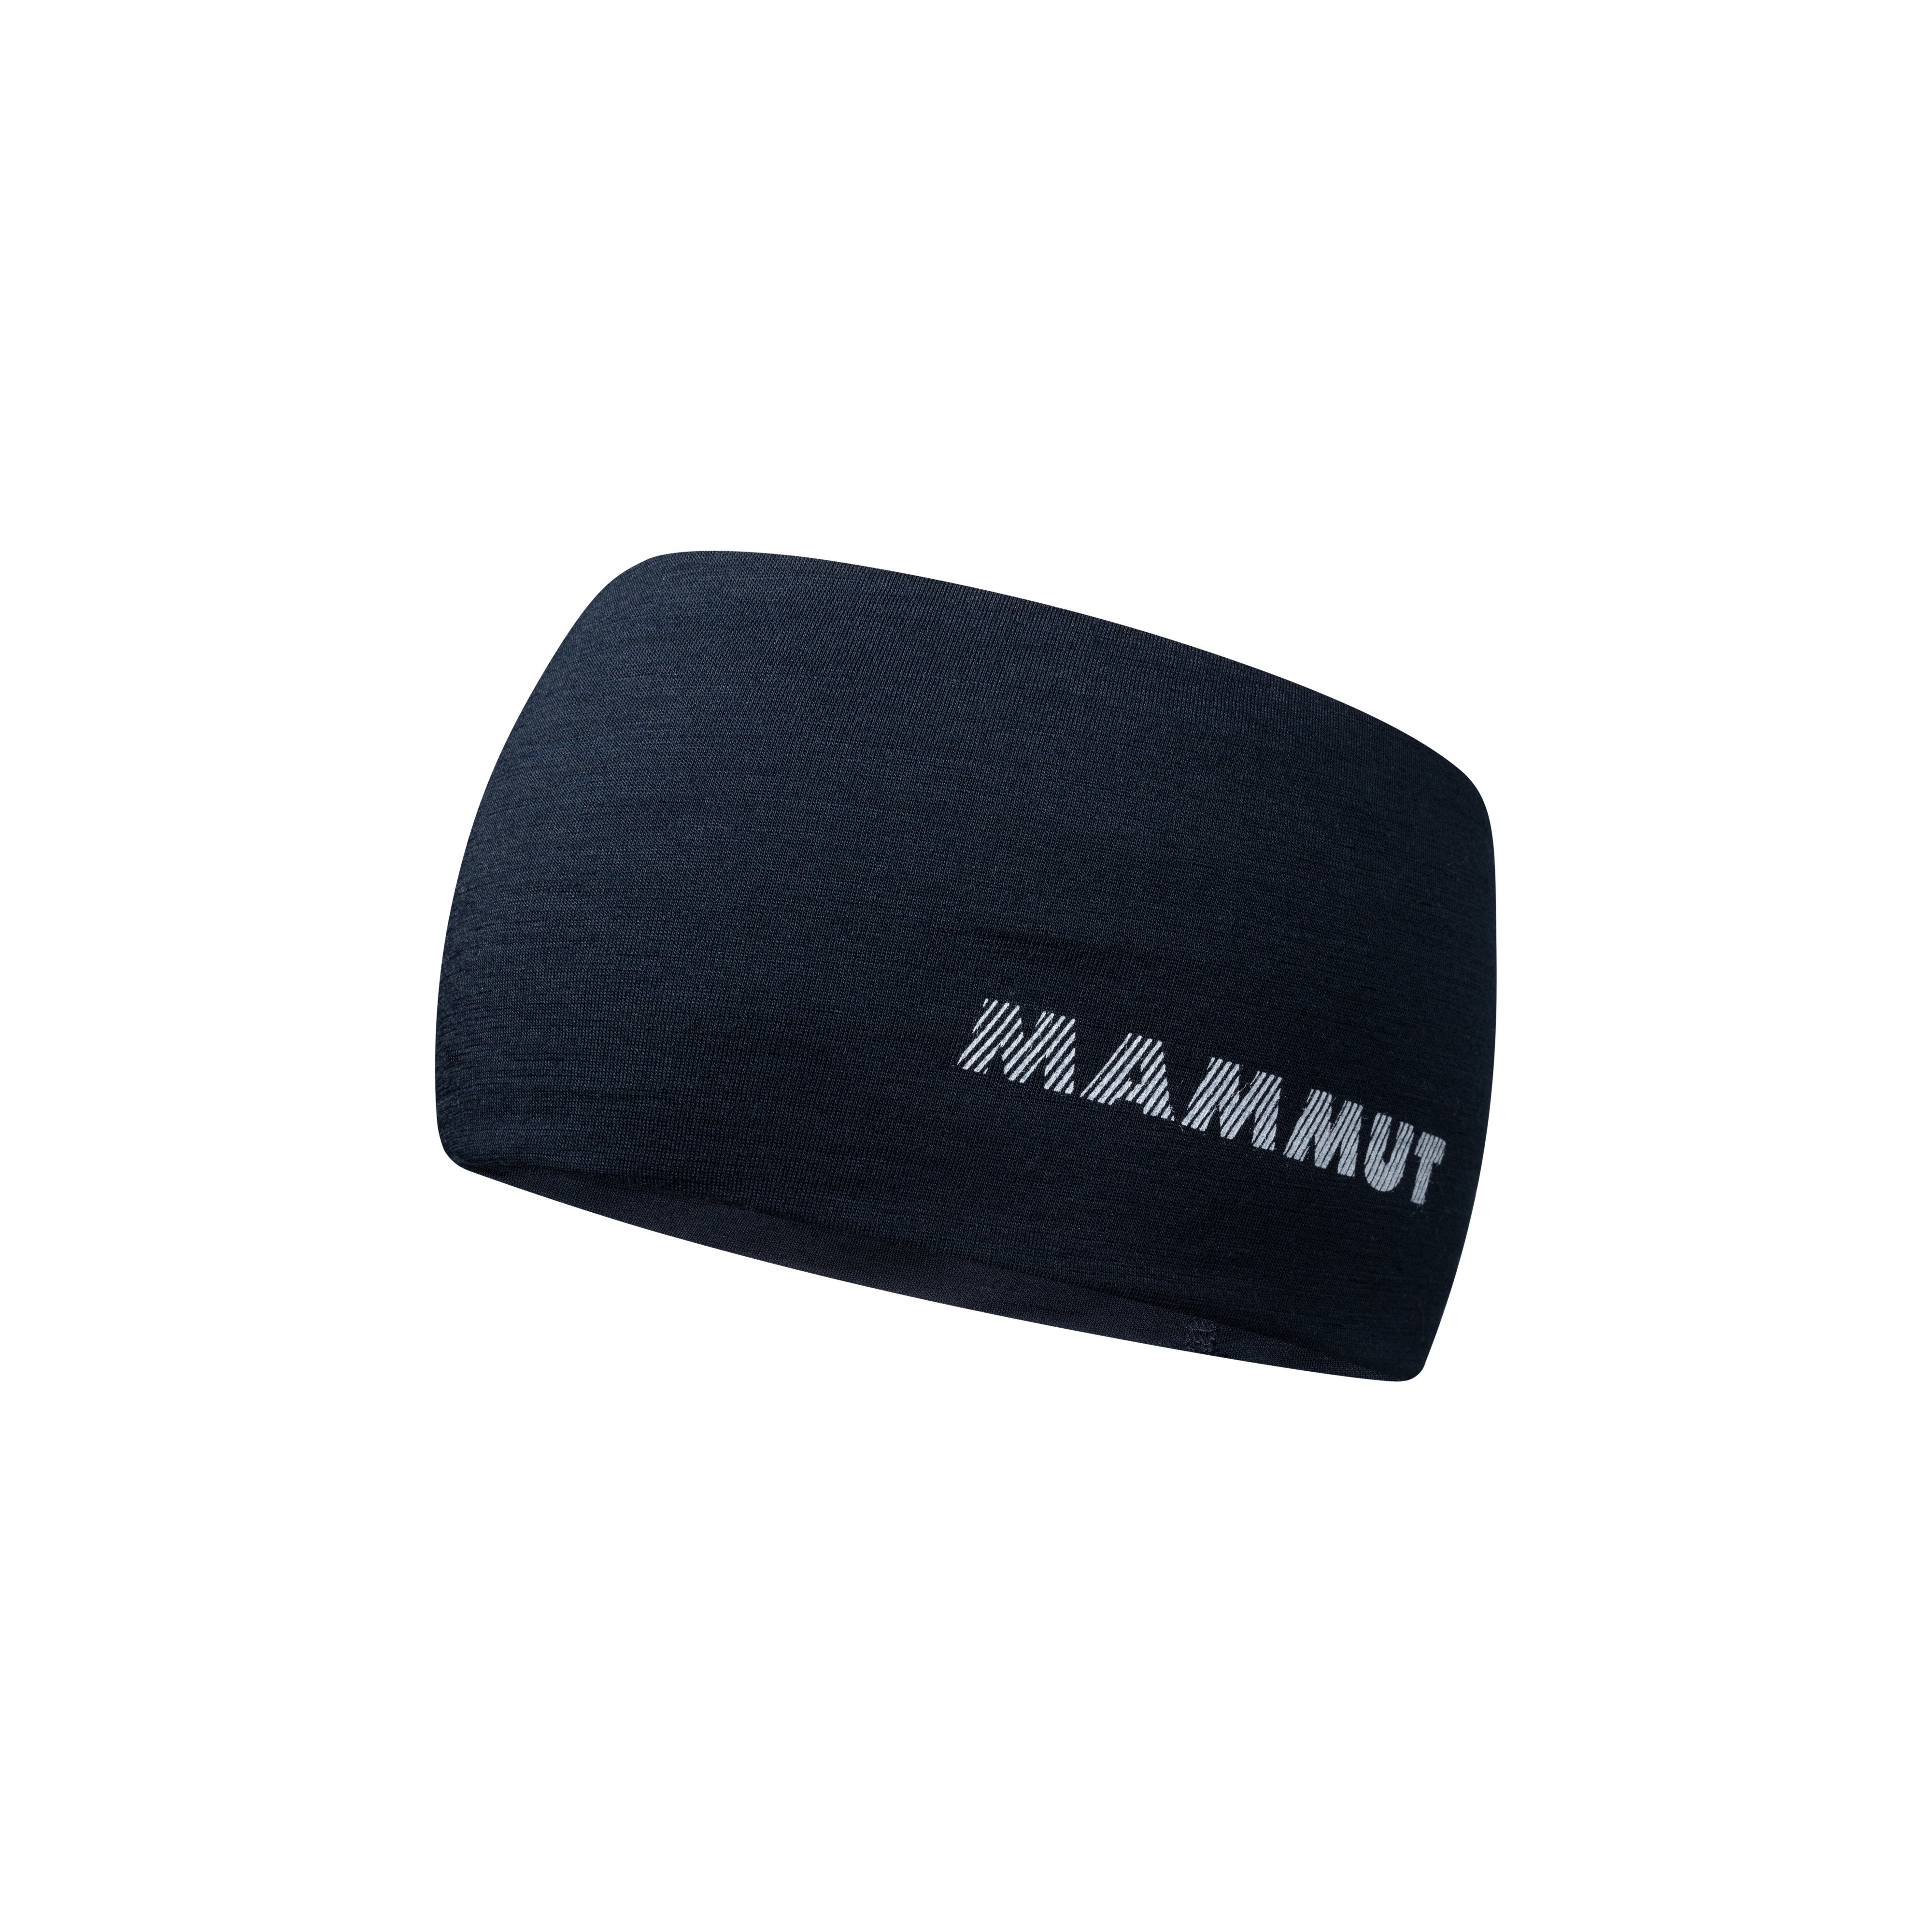 Merino Headband - marine melange, one size product image